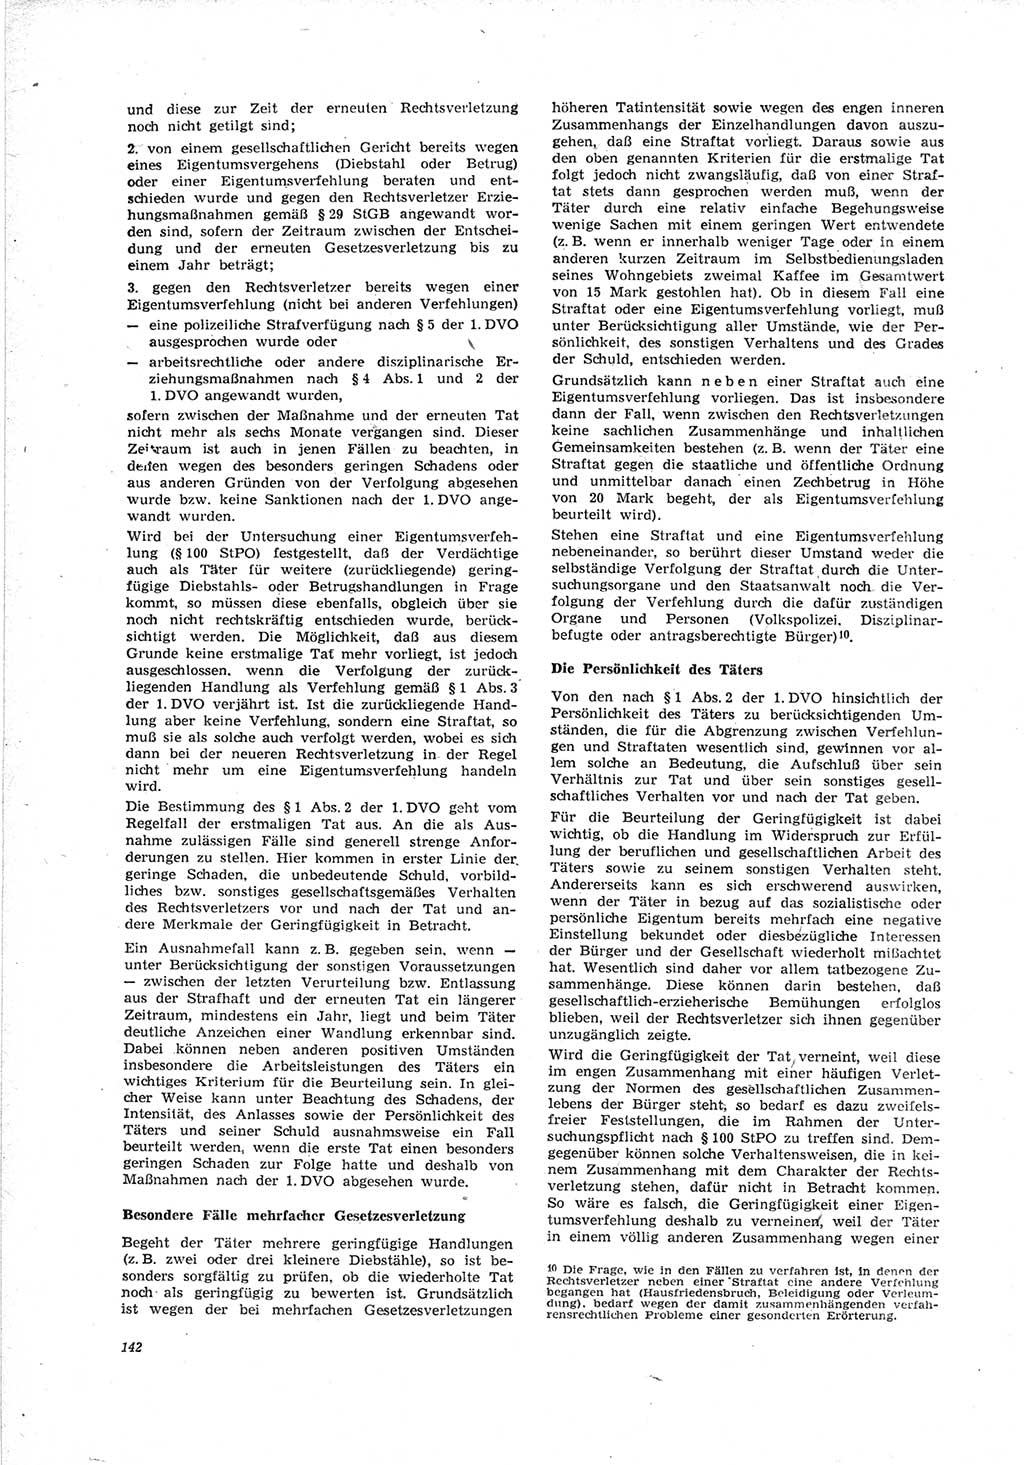 Neue Justiz (NJ), Zeitschrift für Recht und Rechtswissenschaft [Deutsche Demokratische Republik (DDR)], 23. Jahrgang 1969, Seite 142 (NJ DDR 1969, S. 142)